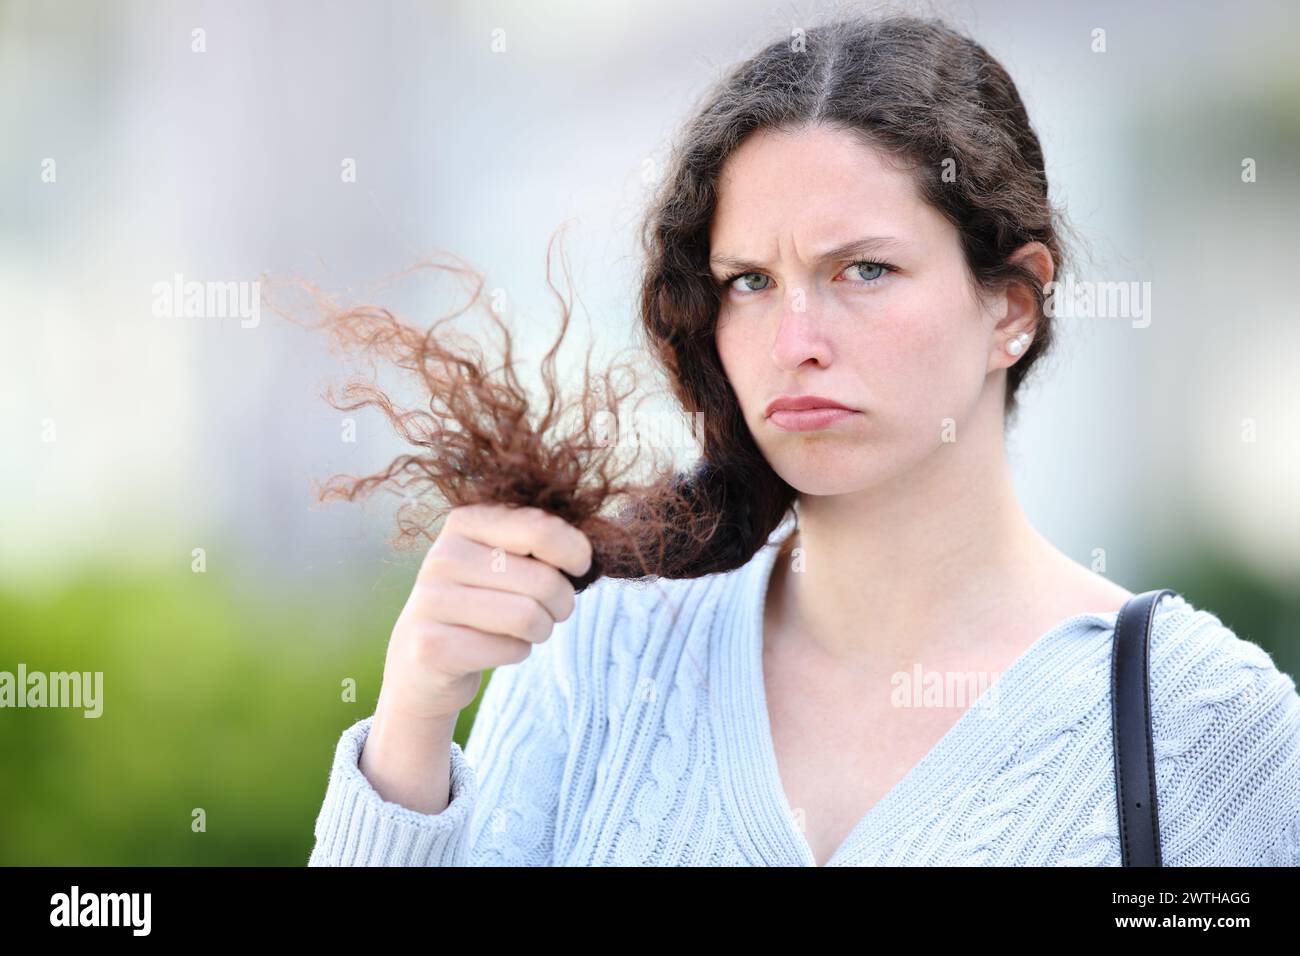 Enttäuschte Frau, die Haare hält und dich auf der Straße ansieht Stockfoto